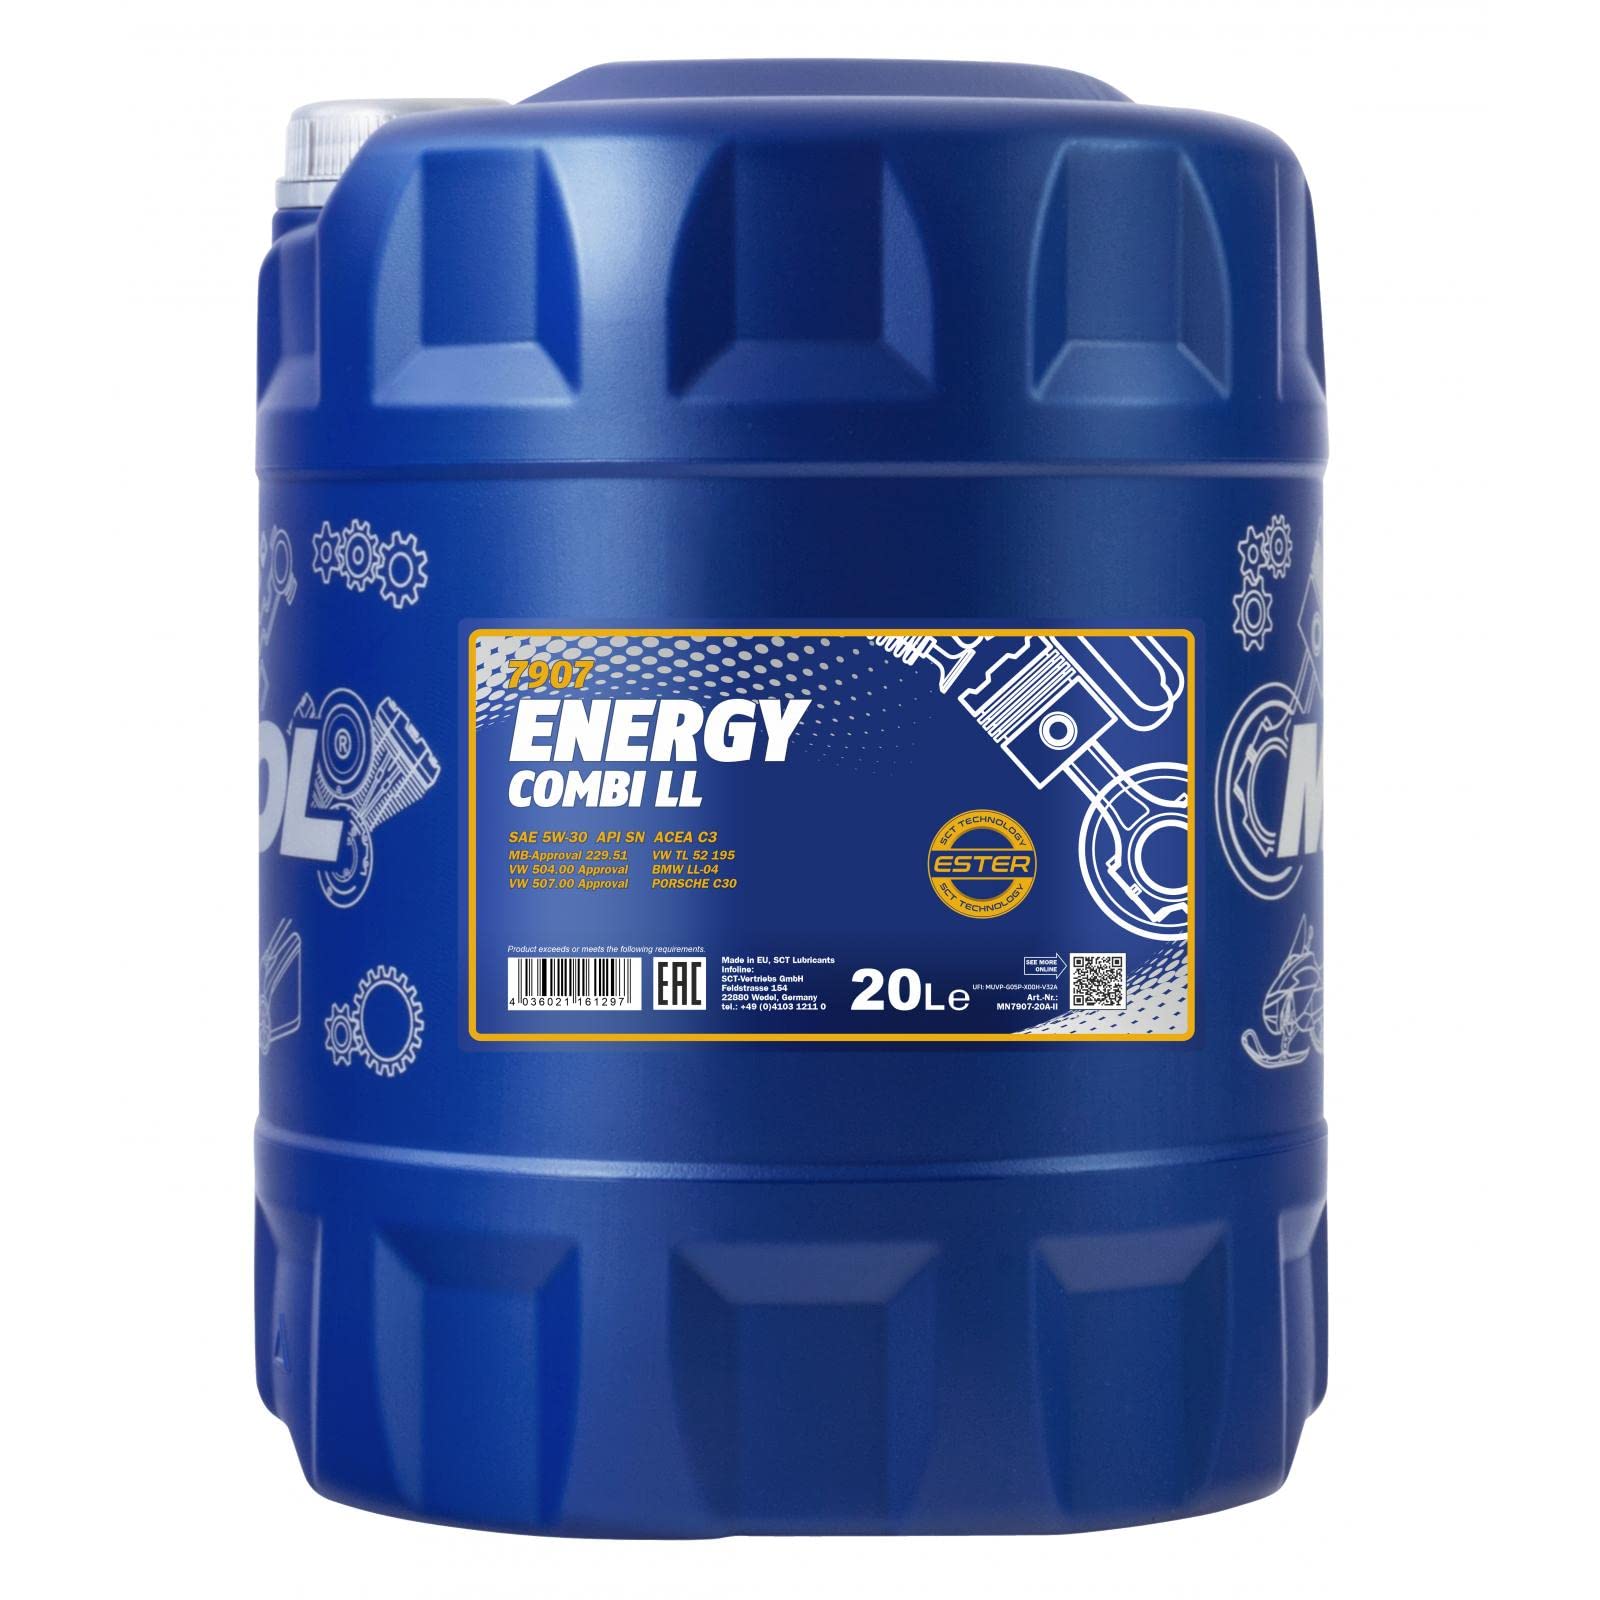 MANNOL Energy Combi LL 5W-30 API SN/CF Motorenöl, 20 Liter von MANNOL